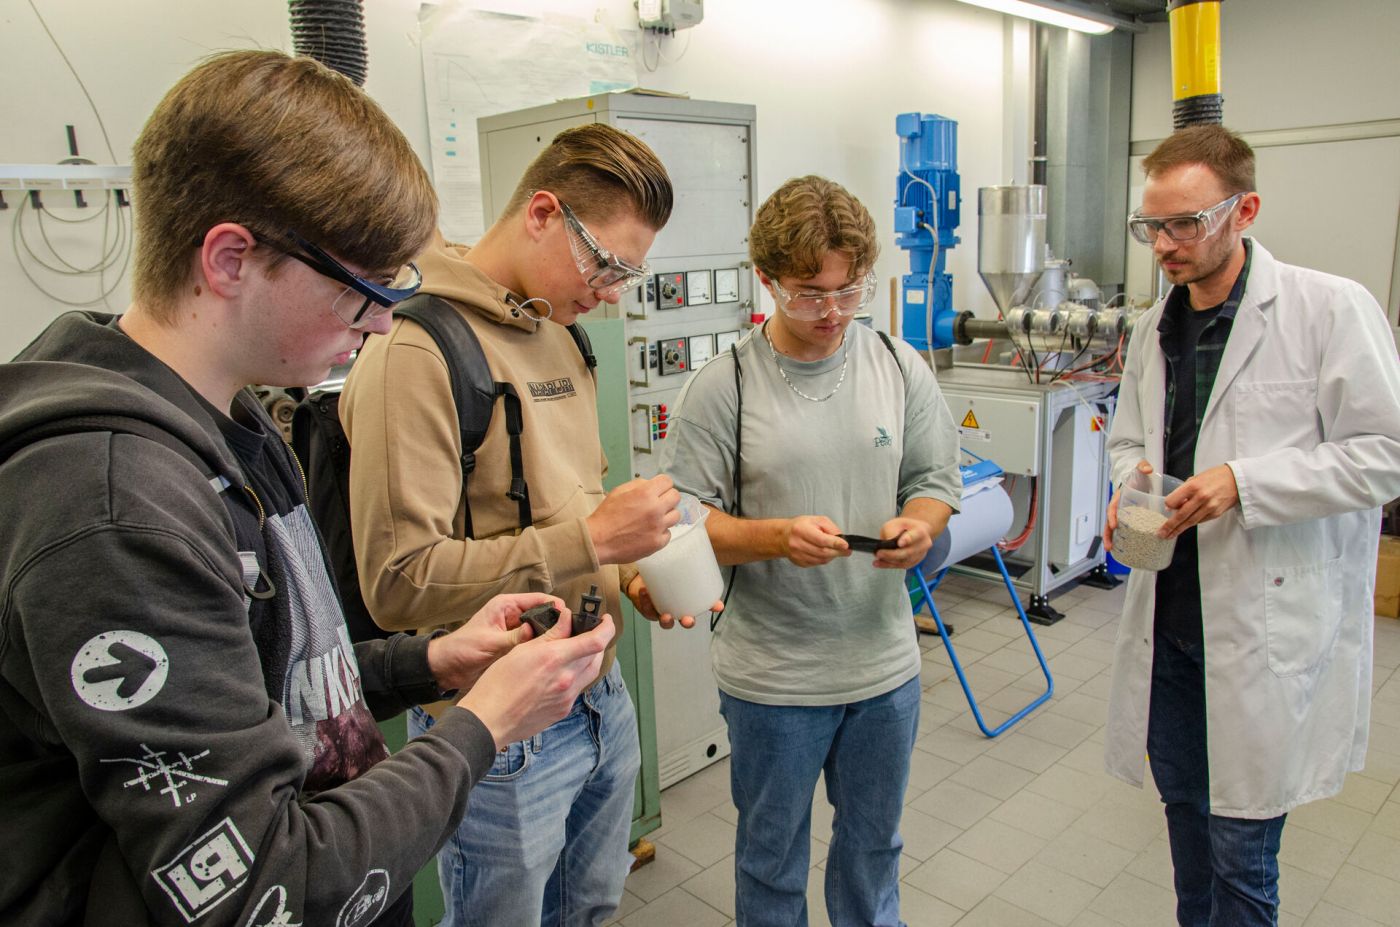 Schülerinnen und Schüler besuchen eine Präsentation in einem Labor. (Foto: FH Münster/Frederik Tebbe)